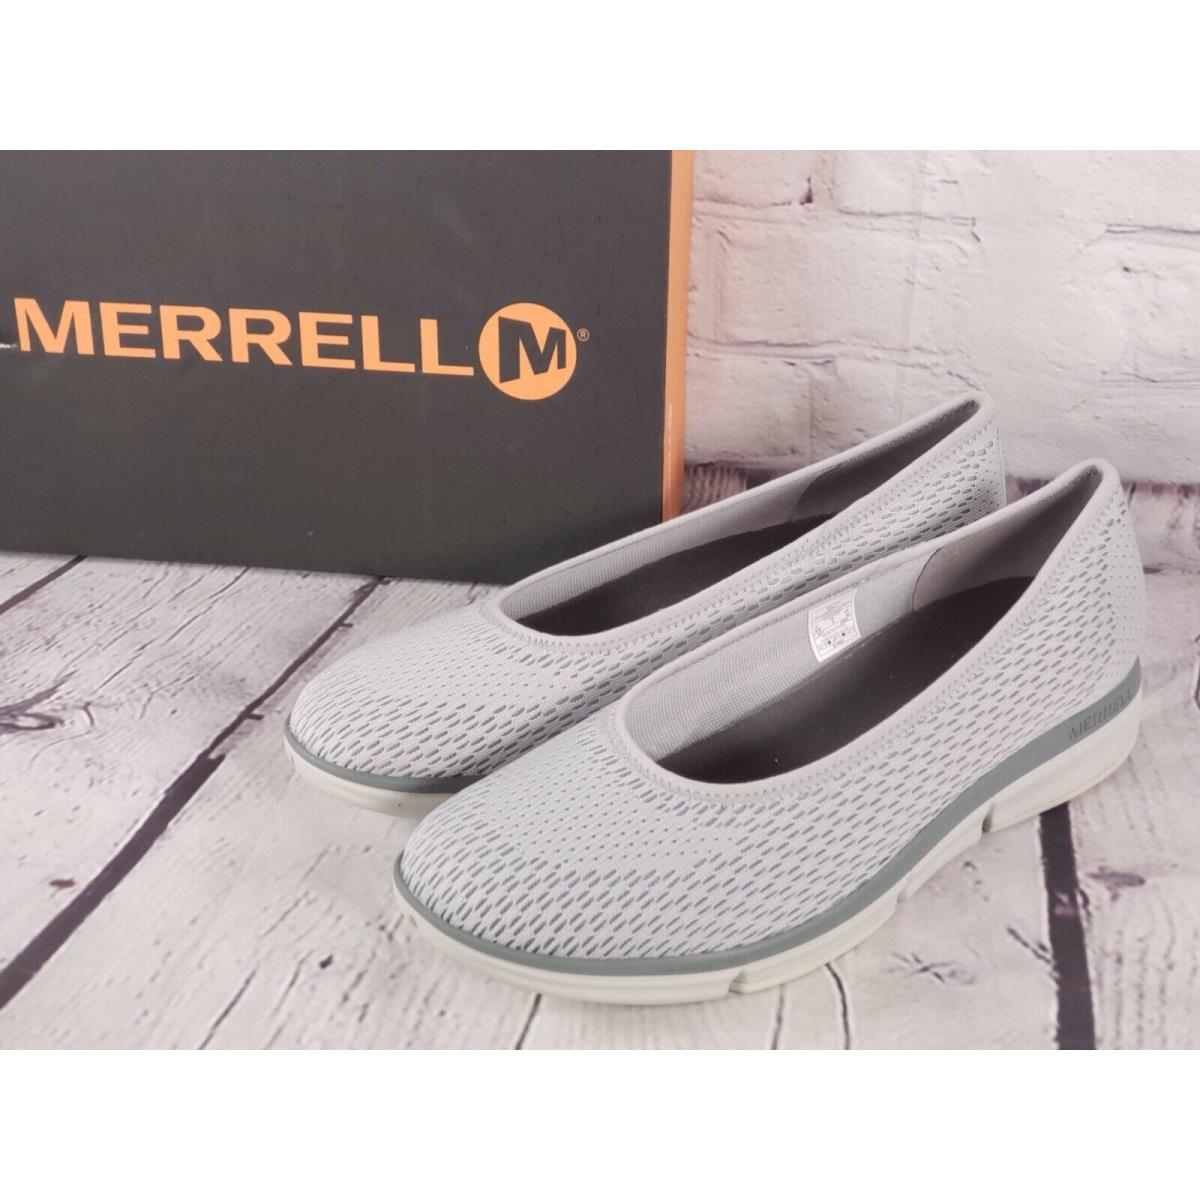 Merrell - Mesh Slip-on Shoes - Zoe Sojourn Ballet - High Rise Gray - 10.5 M